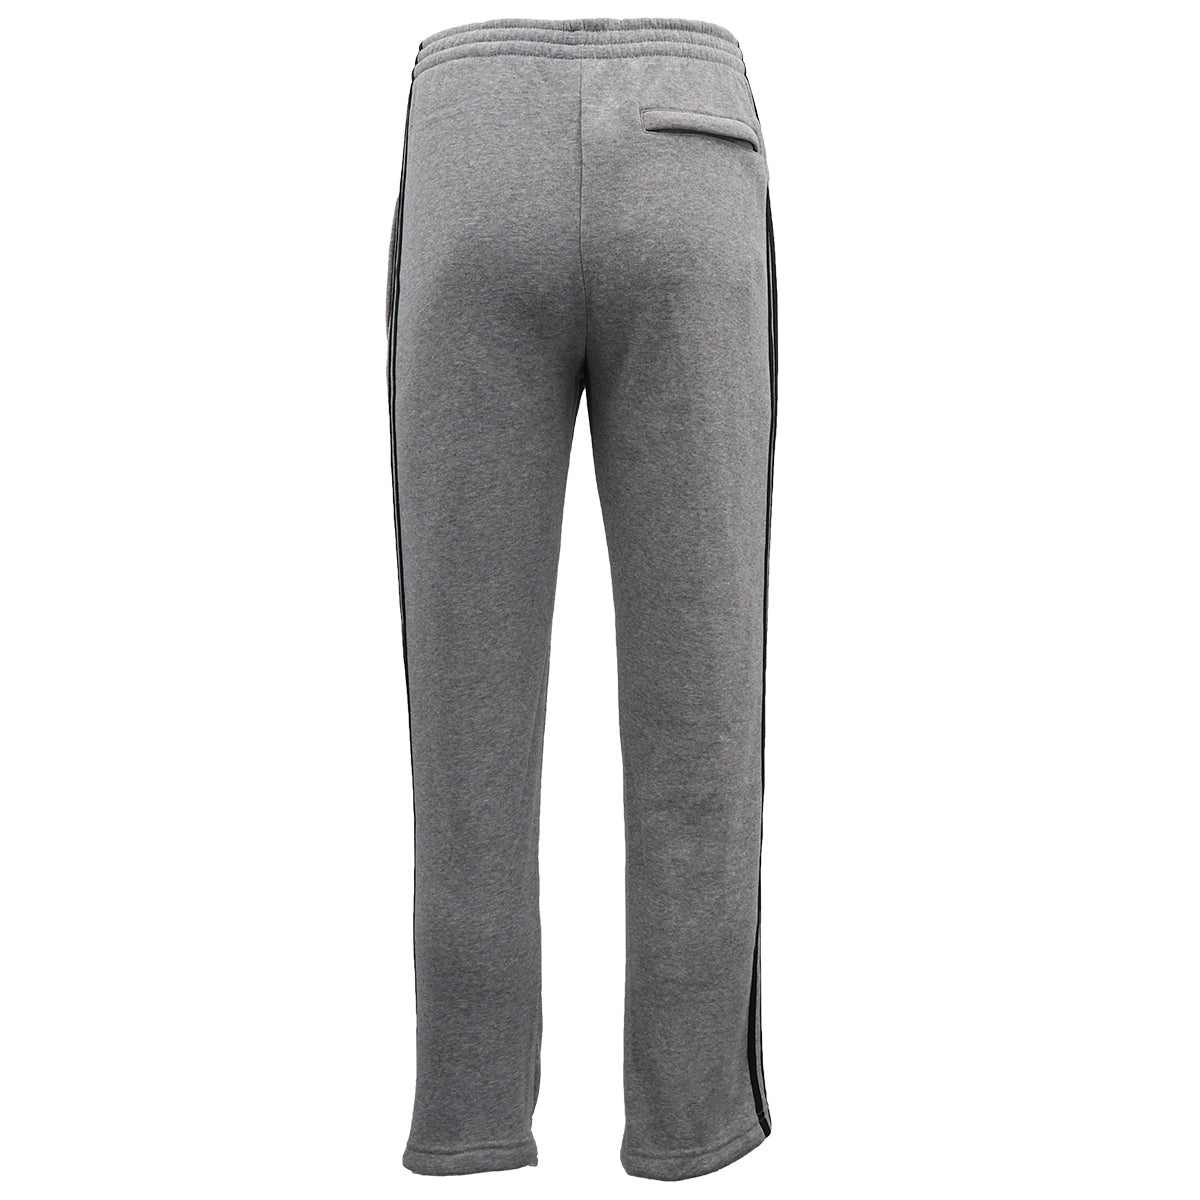 Men's Fleece Casual Sports Track Pants w Zip Pocket Striped Sweat Trousers S-6XL, Black, L